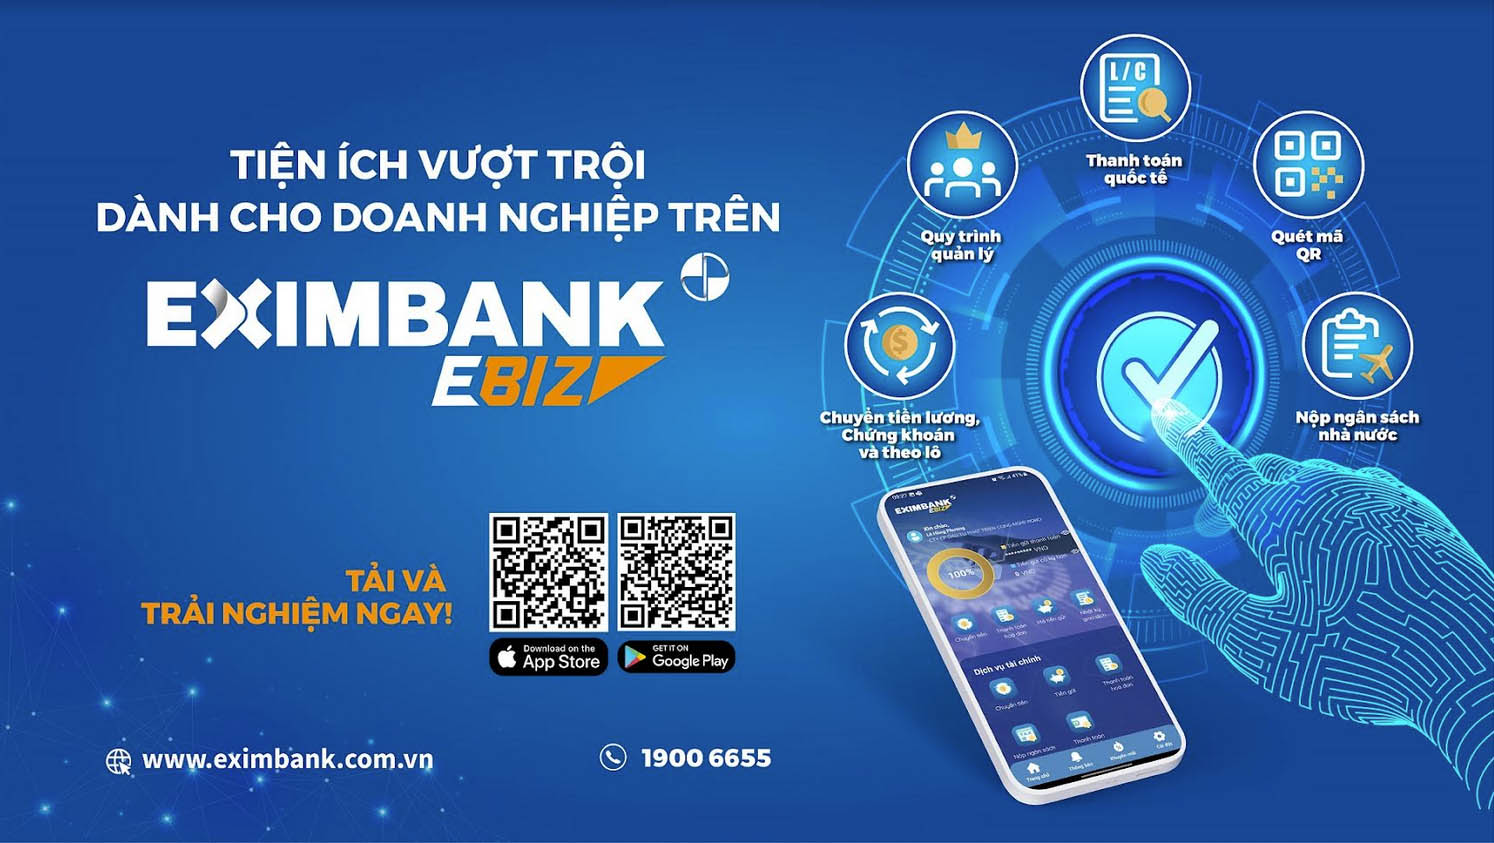 Ứng dụng Mobile Banking Eximbank Ebiz giúp khách hàng dễ dàng phê duyệt các giao dịch và quản lý tài chính mọi lúc mọi nơi